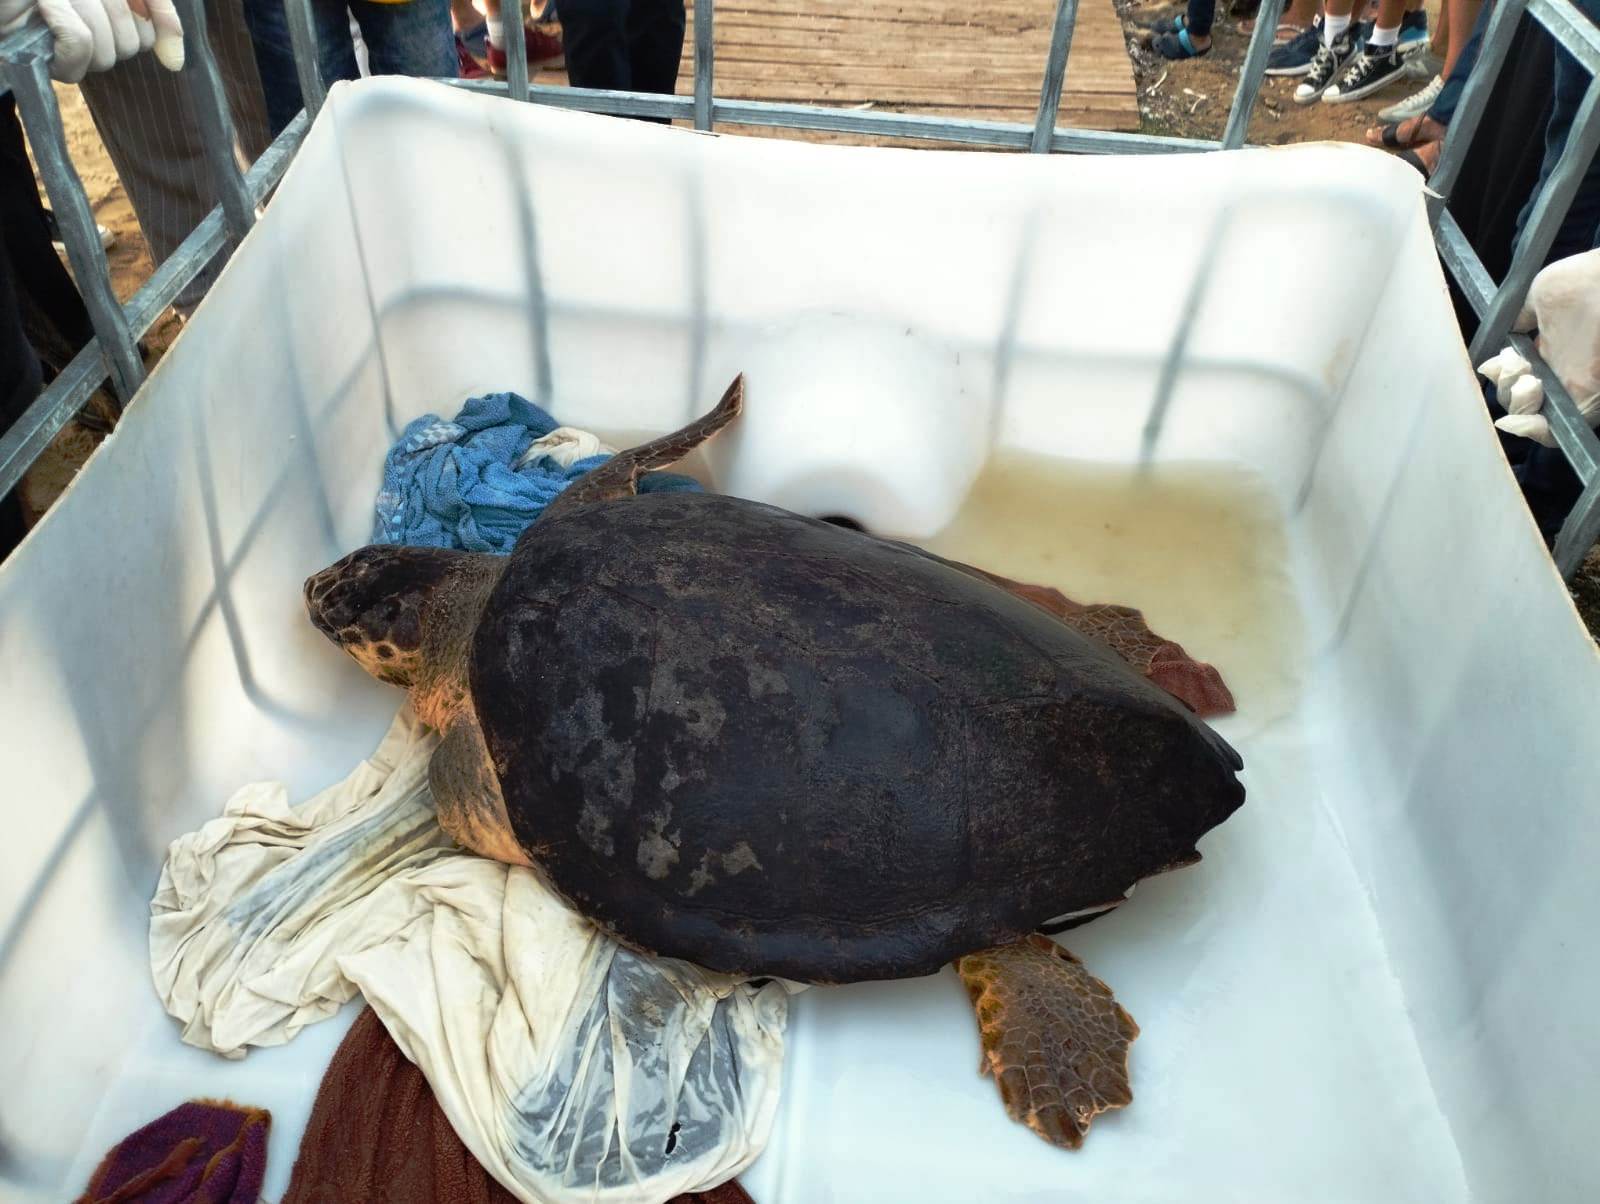 Deniz Kaplumbağaları Koruma ve Araştırma Projesi kapanış etkinliği yapıldı